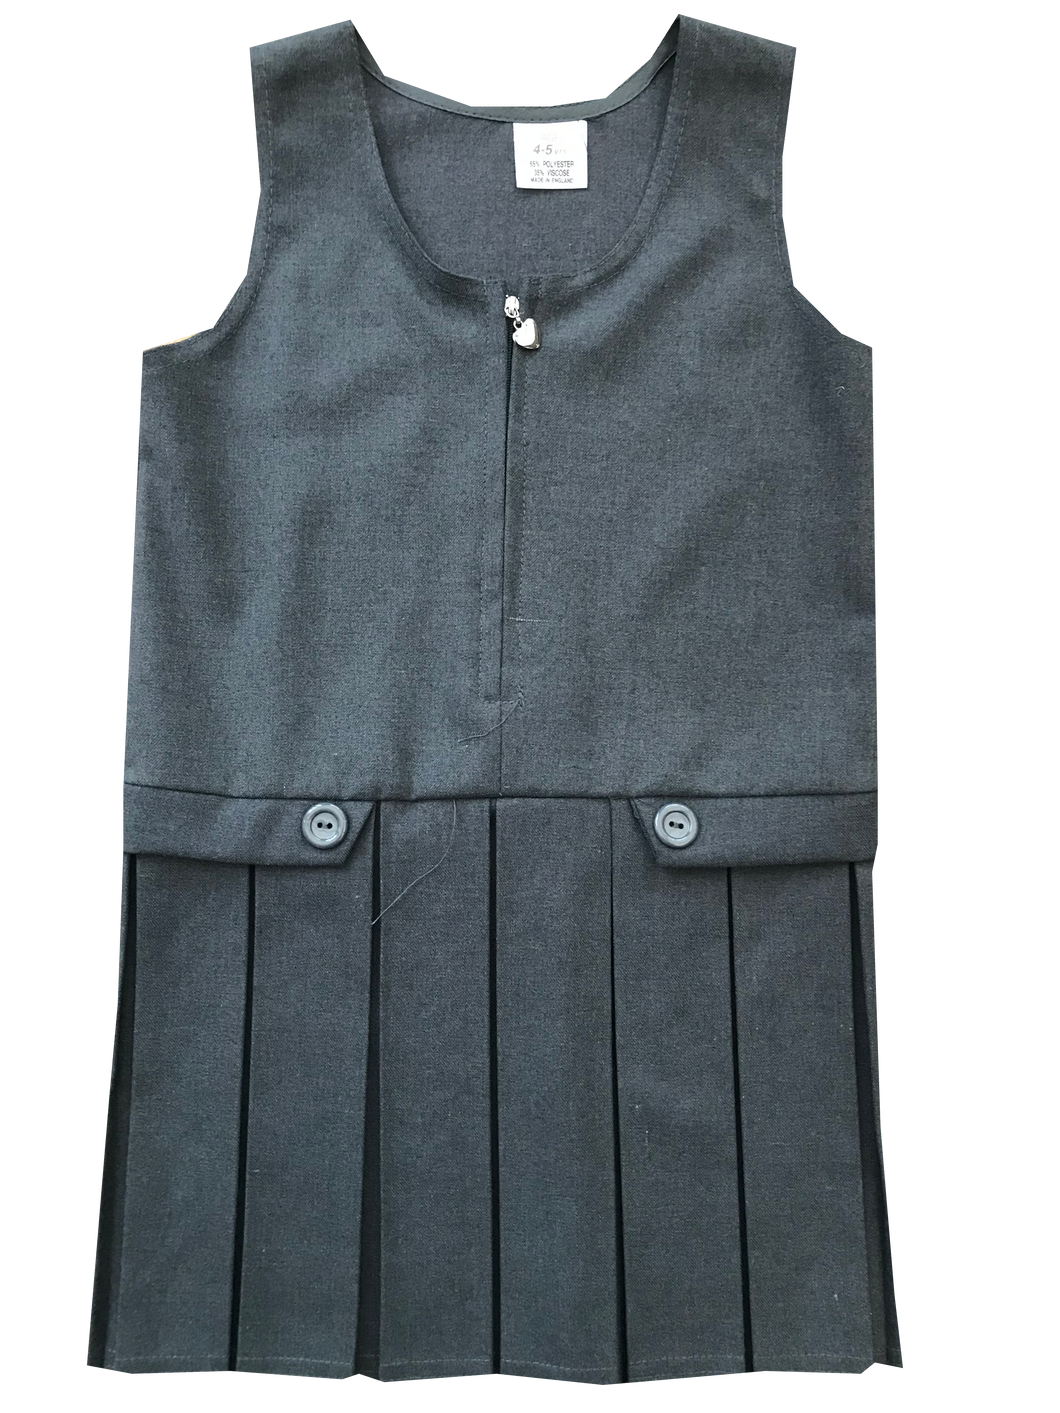 General Schoolwear - Girls Pinafores - Zip Front in Grey